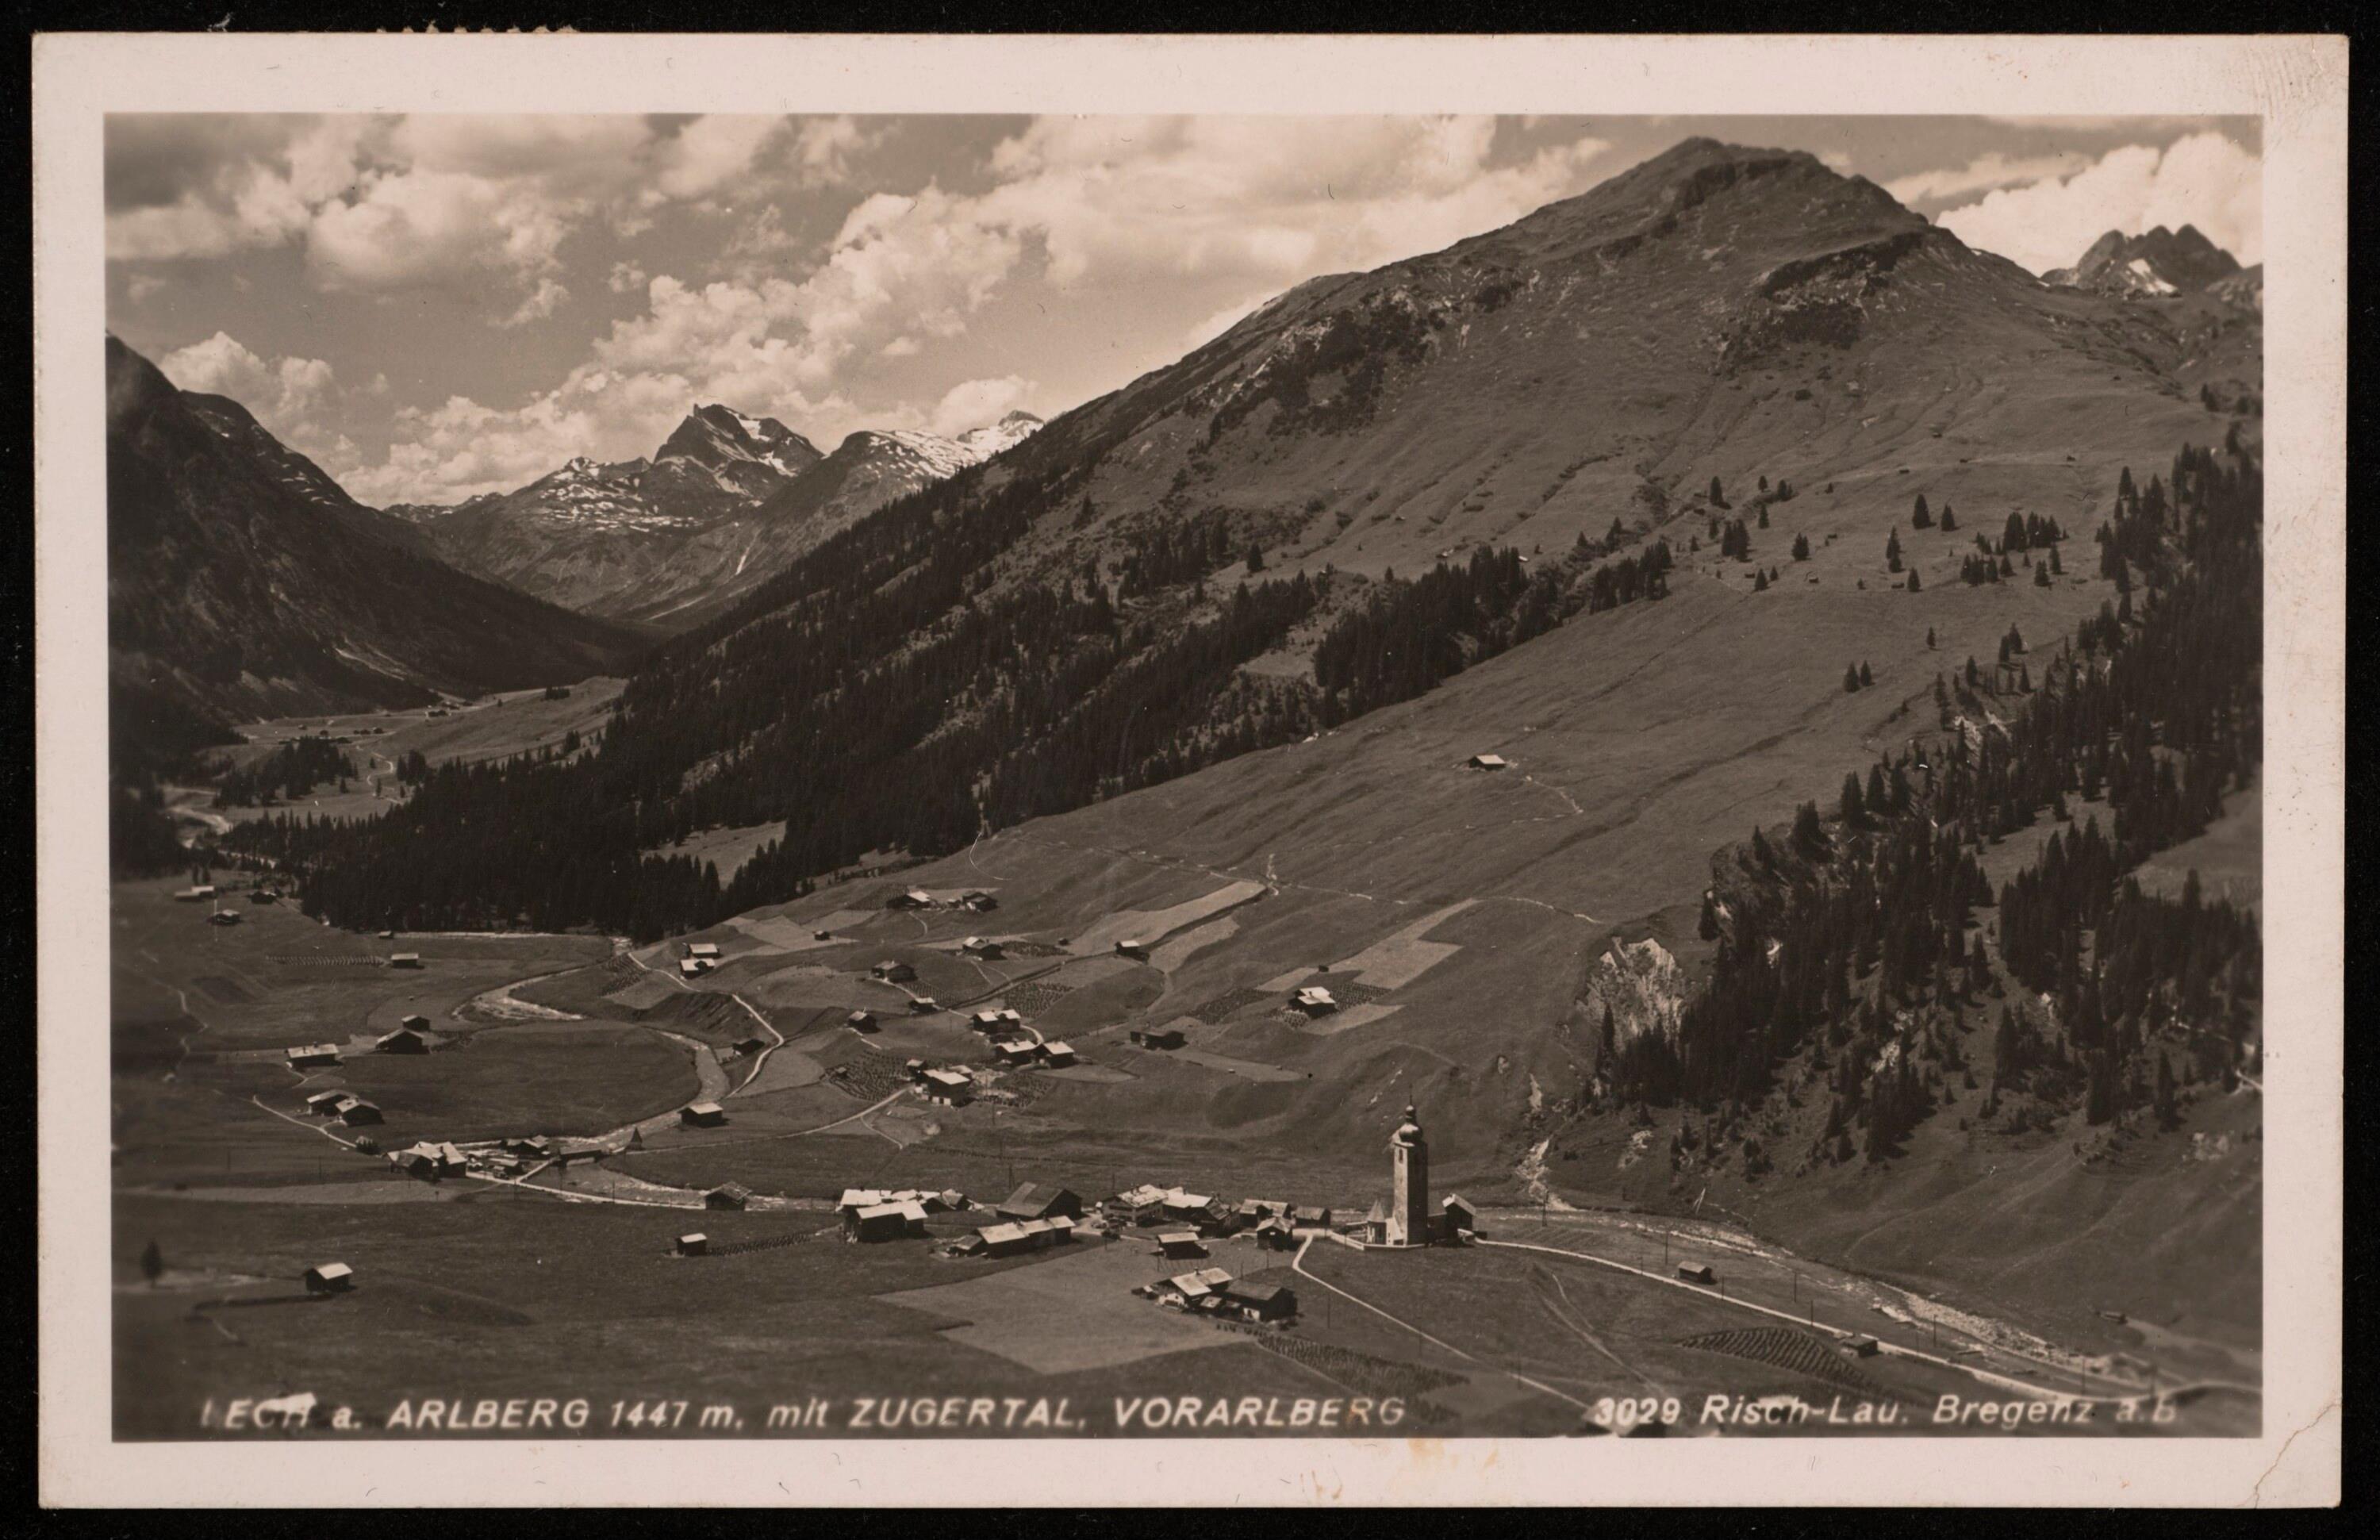 Lech a. Arlberg 1447 m. mit Zugertal, Vorarlberg></div>


    <hr>
    <div class=